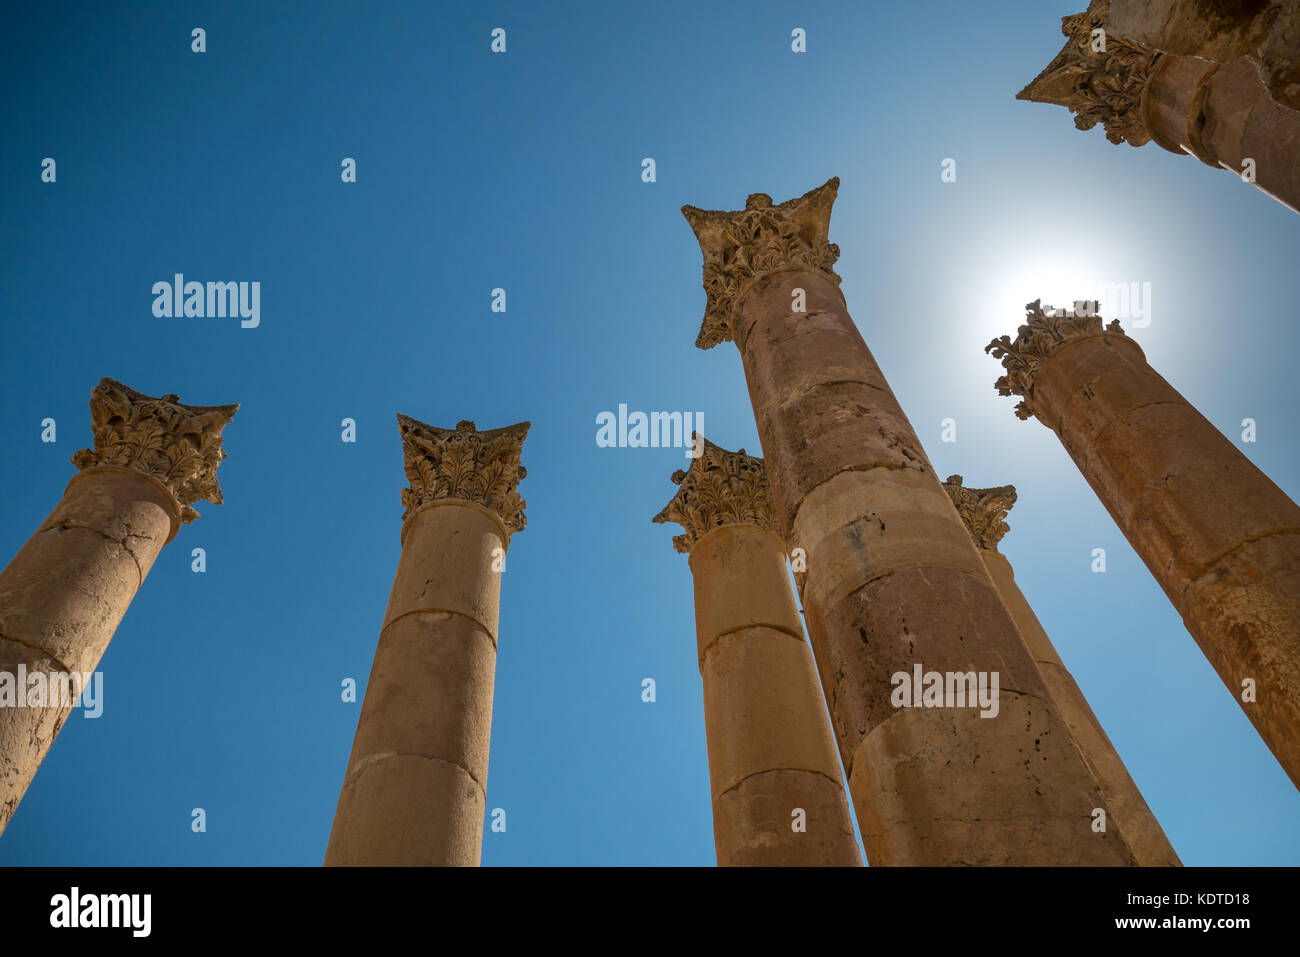 Il Tempio di Artemide cercando fino a colonne corinzie con foglie di acanto e decorazione sunburst, città romana Jerash, sito archeologico, Giordania, Medio Oriente Foto Stock